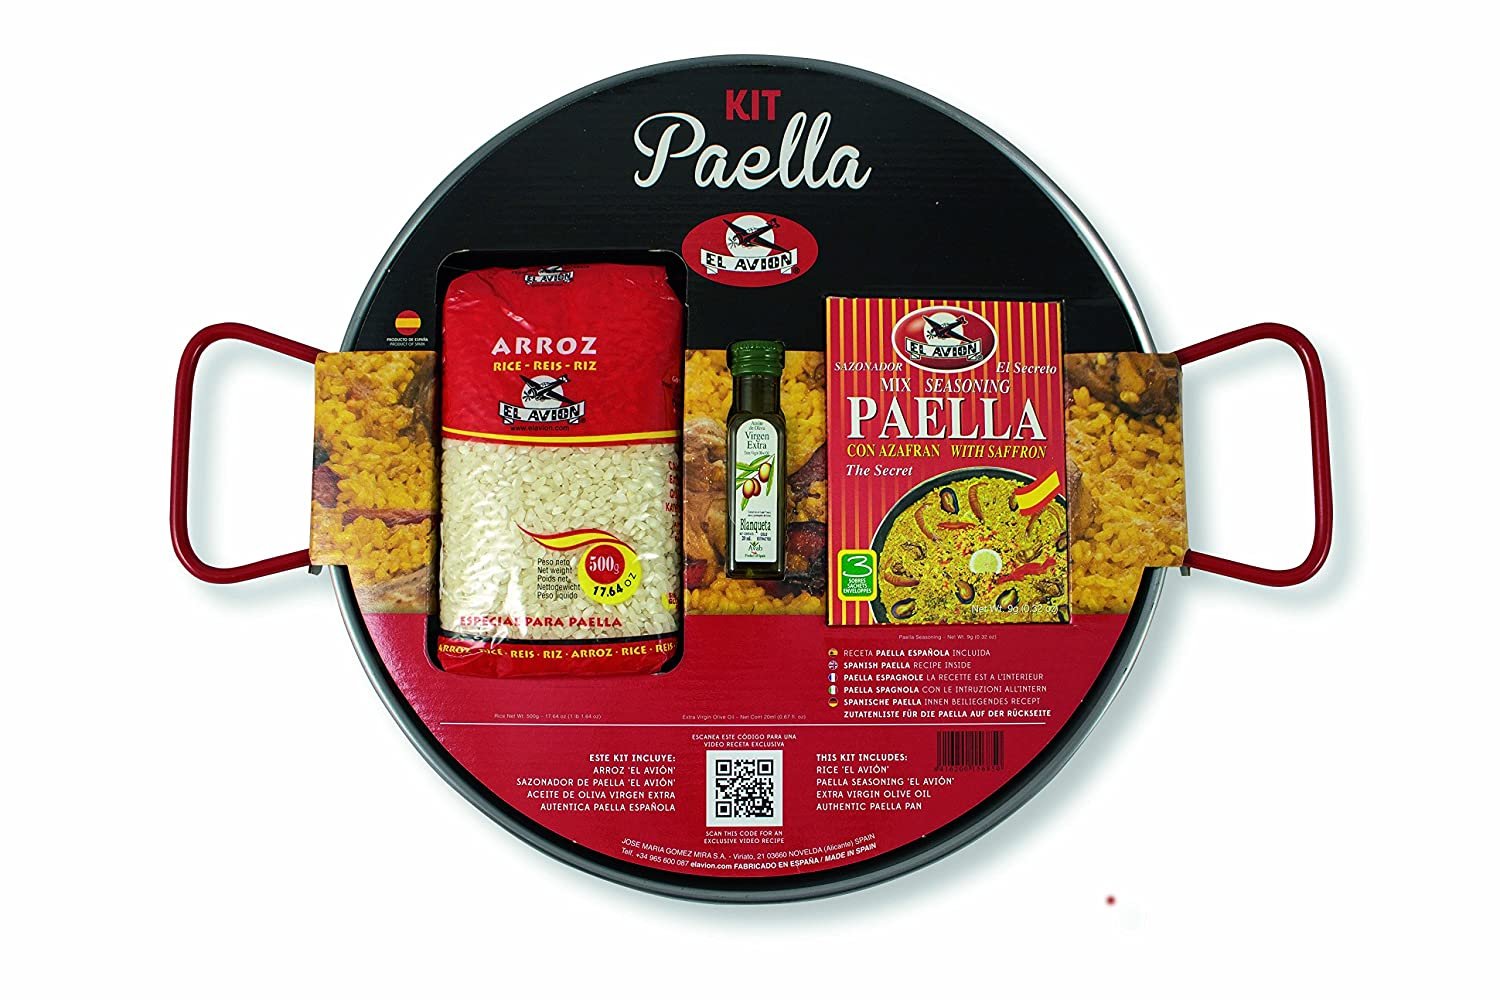 Paella Kit El Avion All Natural Ingredients from Spain (4 Servings) + pan From Spain